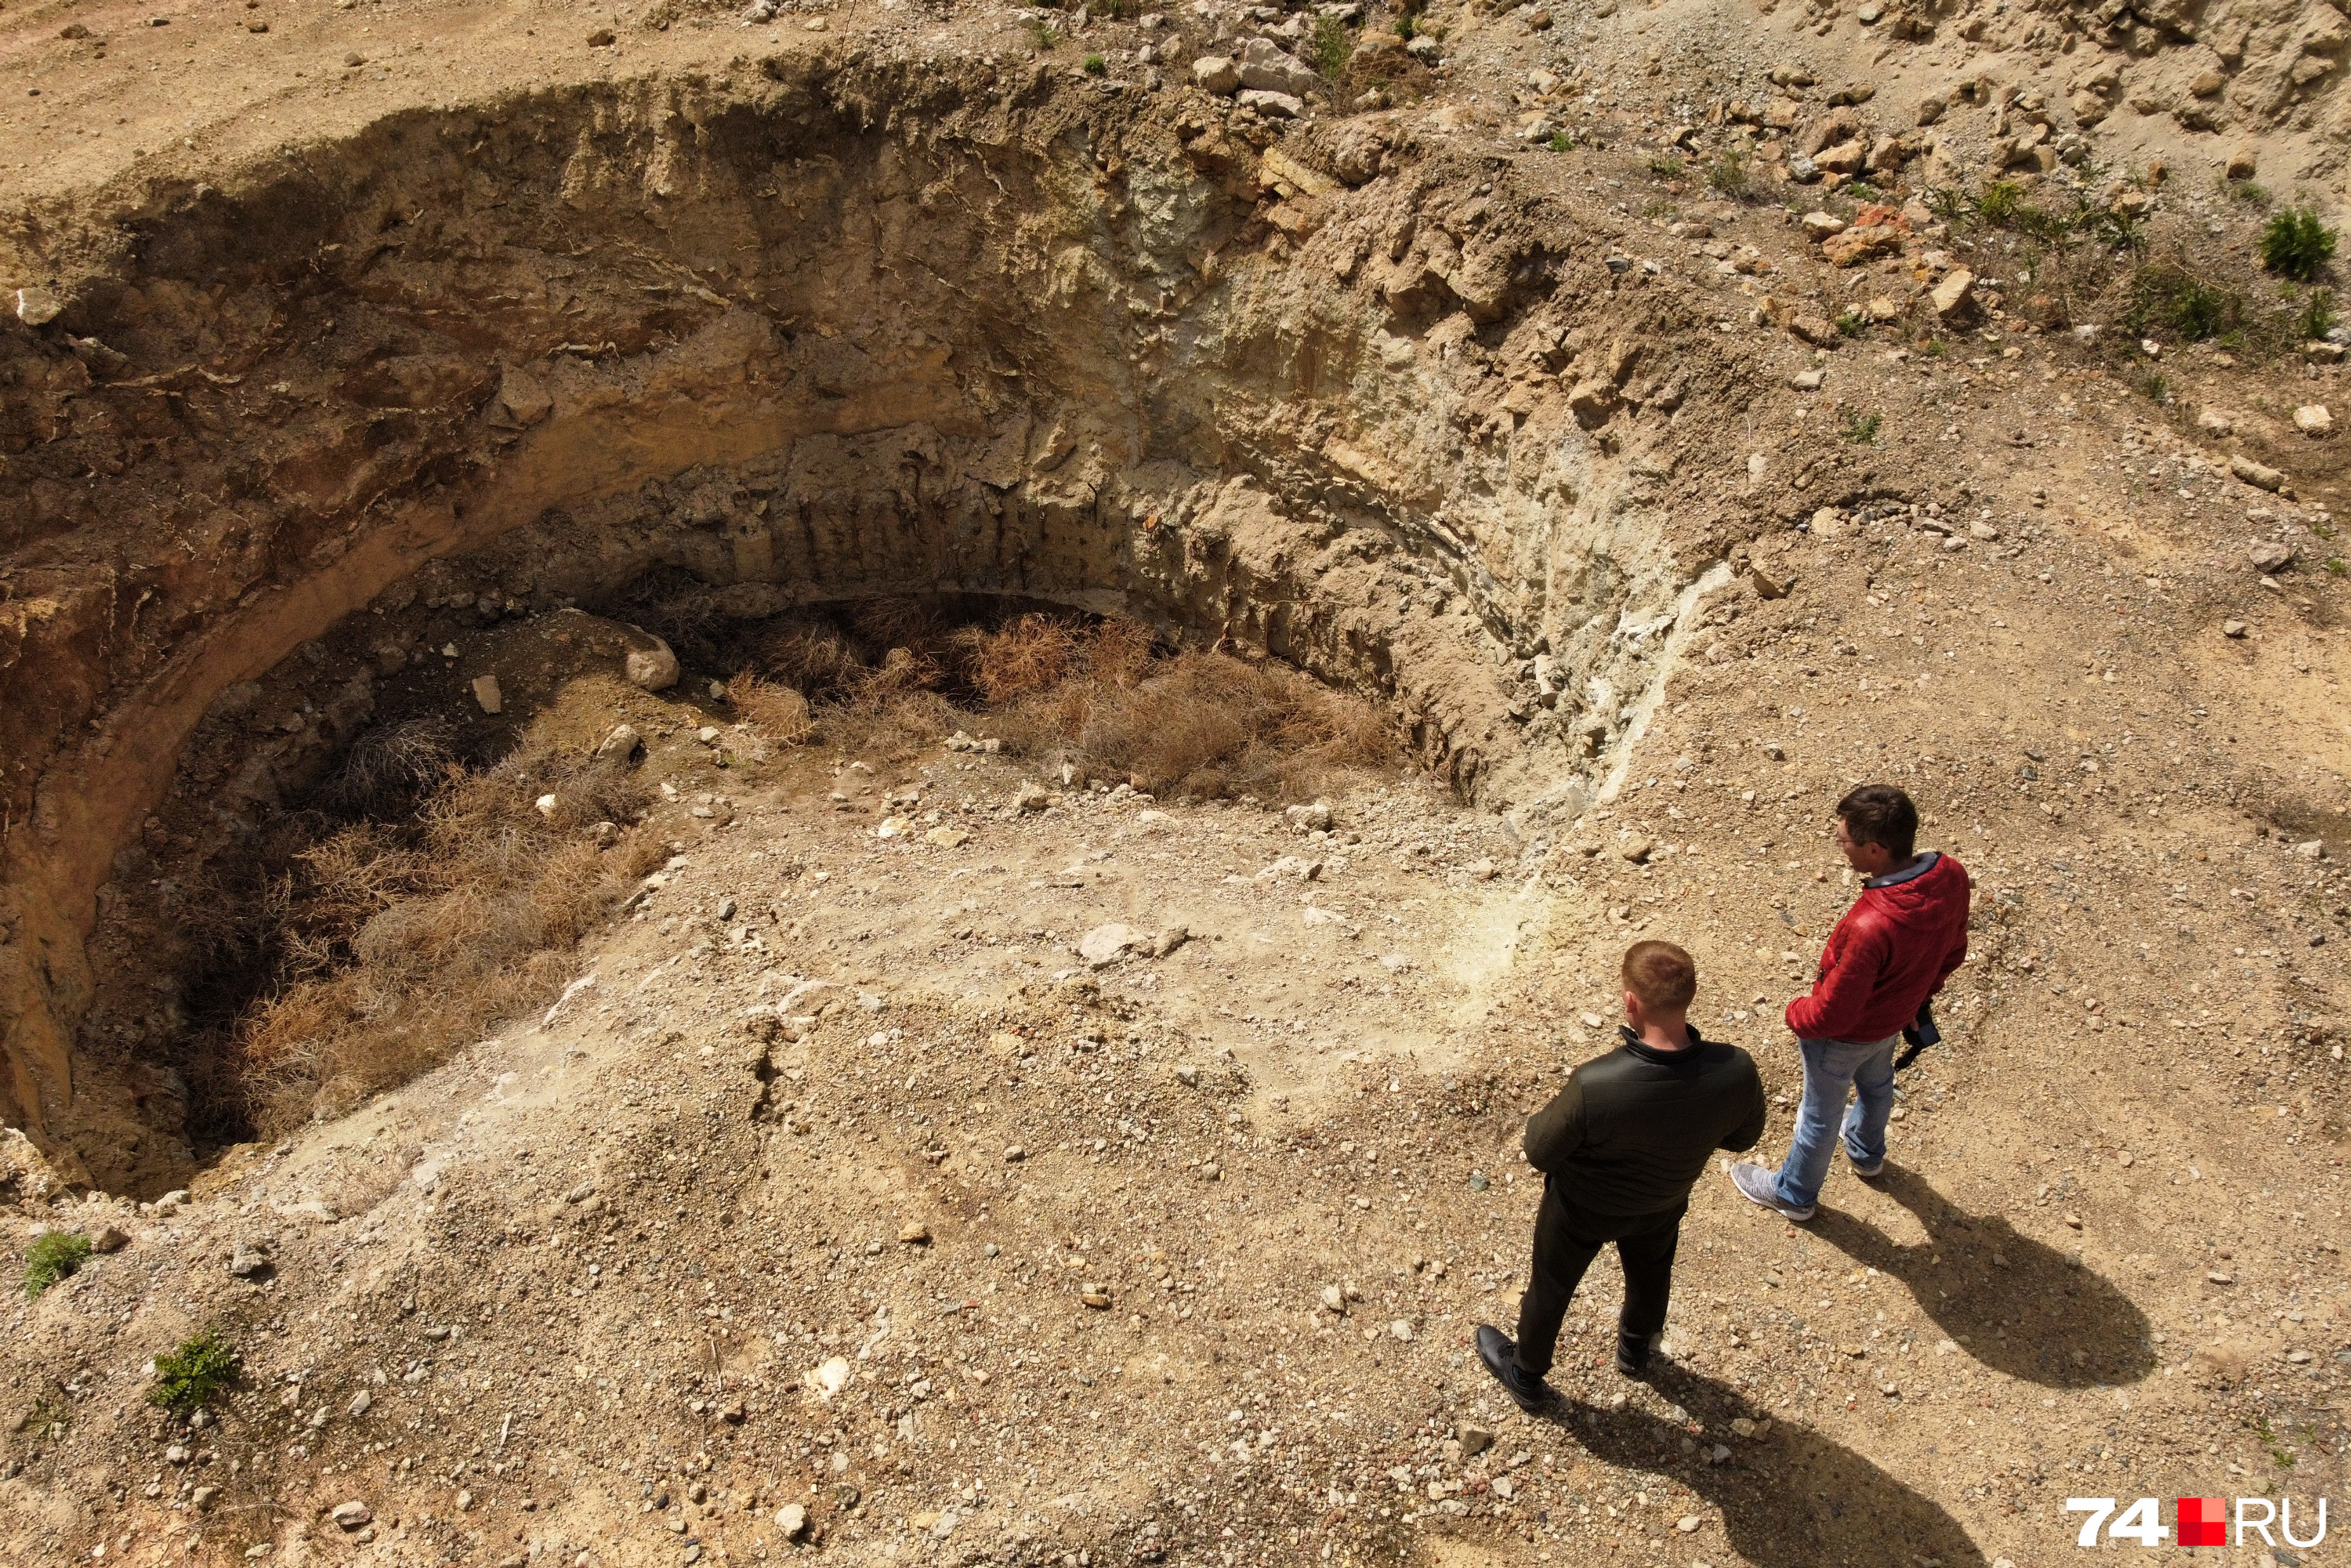 Насколько я понял, лет пять назад копатели добрались до нижних частей шахты, а это метров тридцать вниз (с учетом десятиметрового кратера, в котором мы стоим)